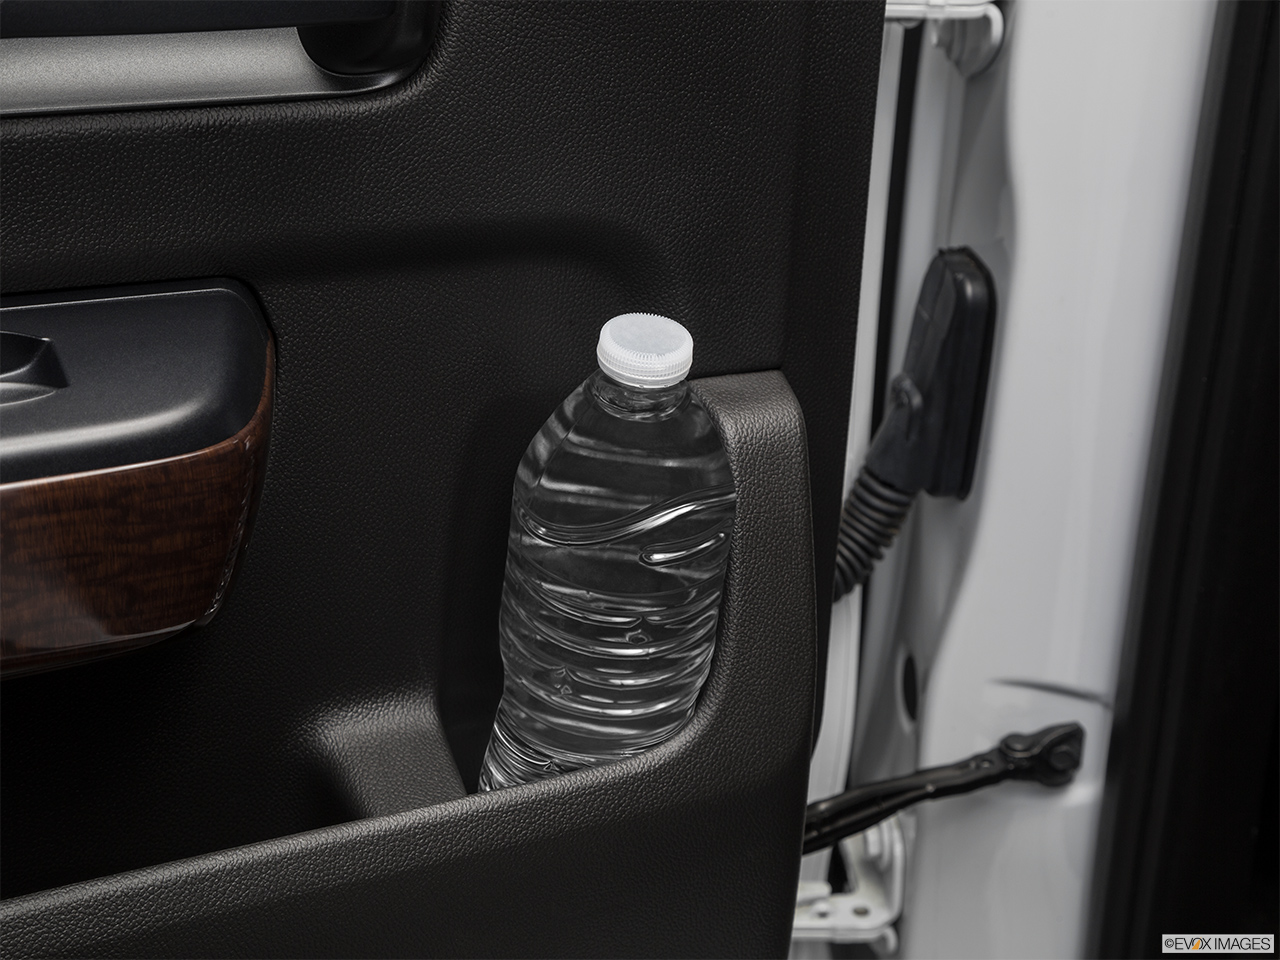 2019 GMC Sierra 2500HD SLT Second row side cup holder with coffee prop, or second row door cup holder with water bottle. 